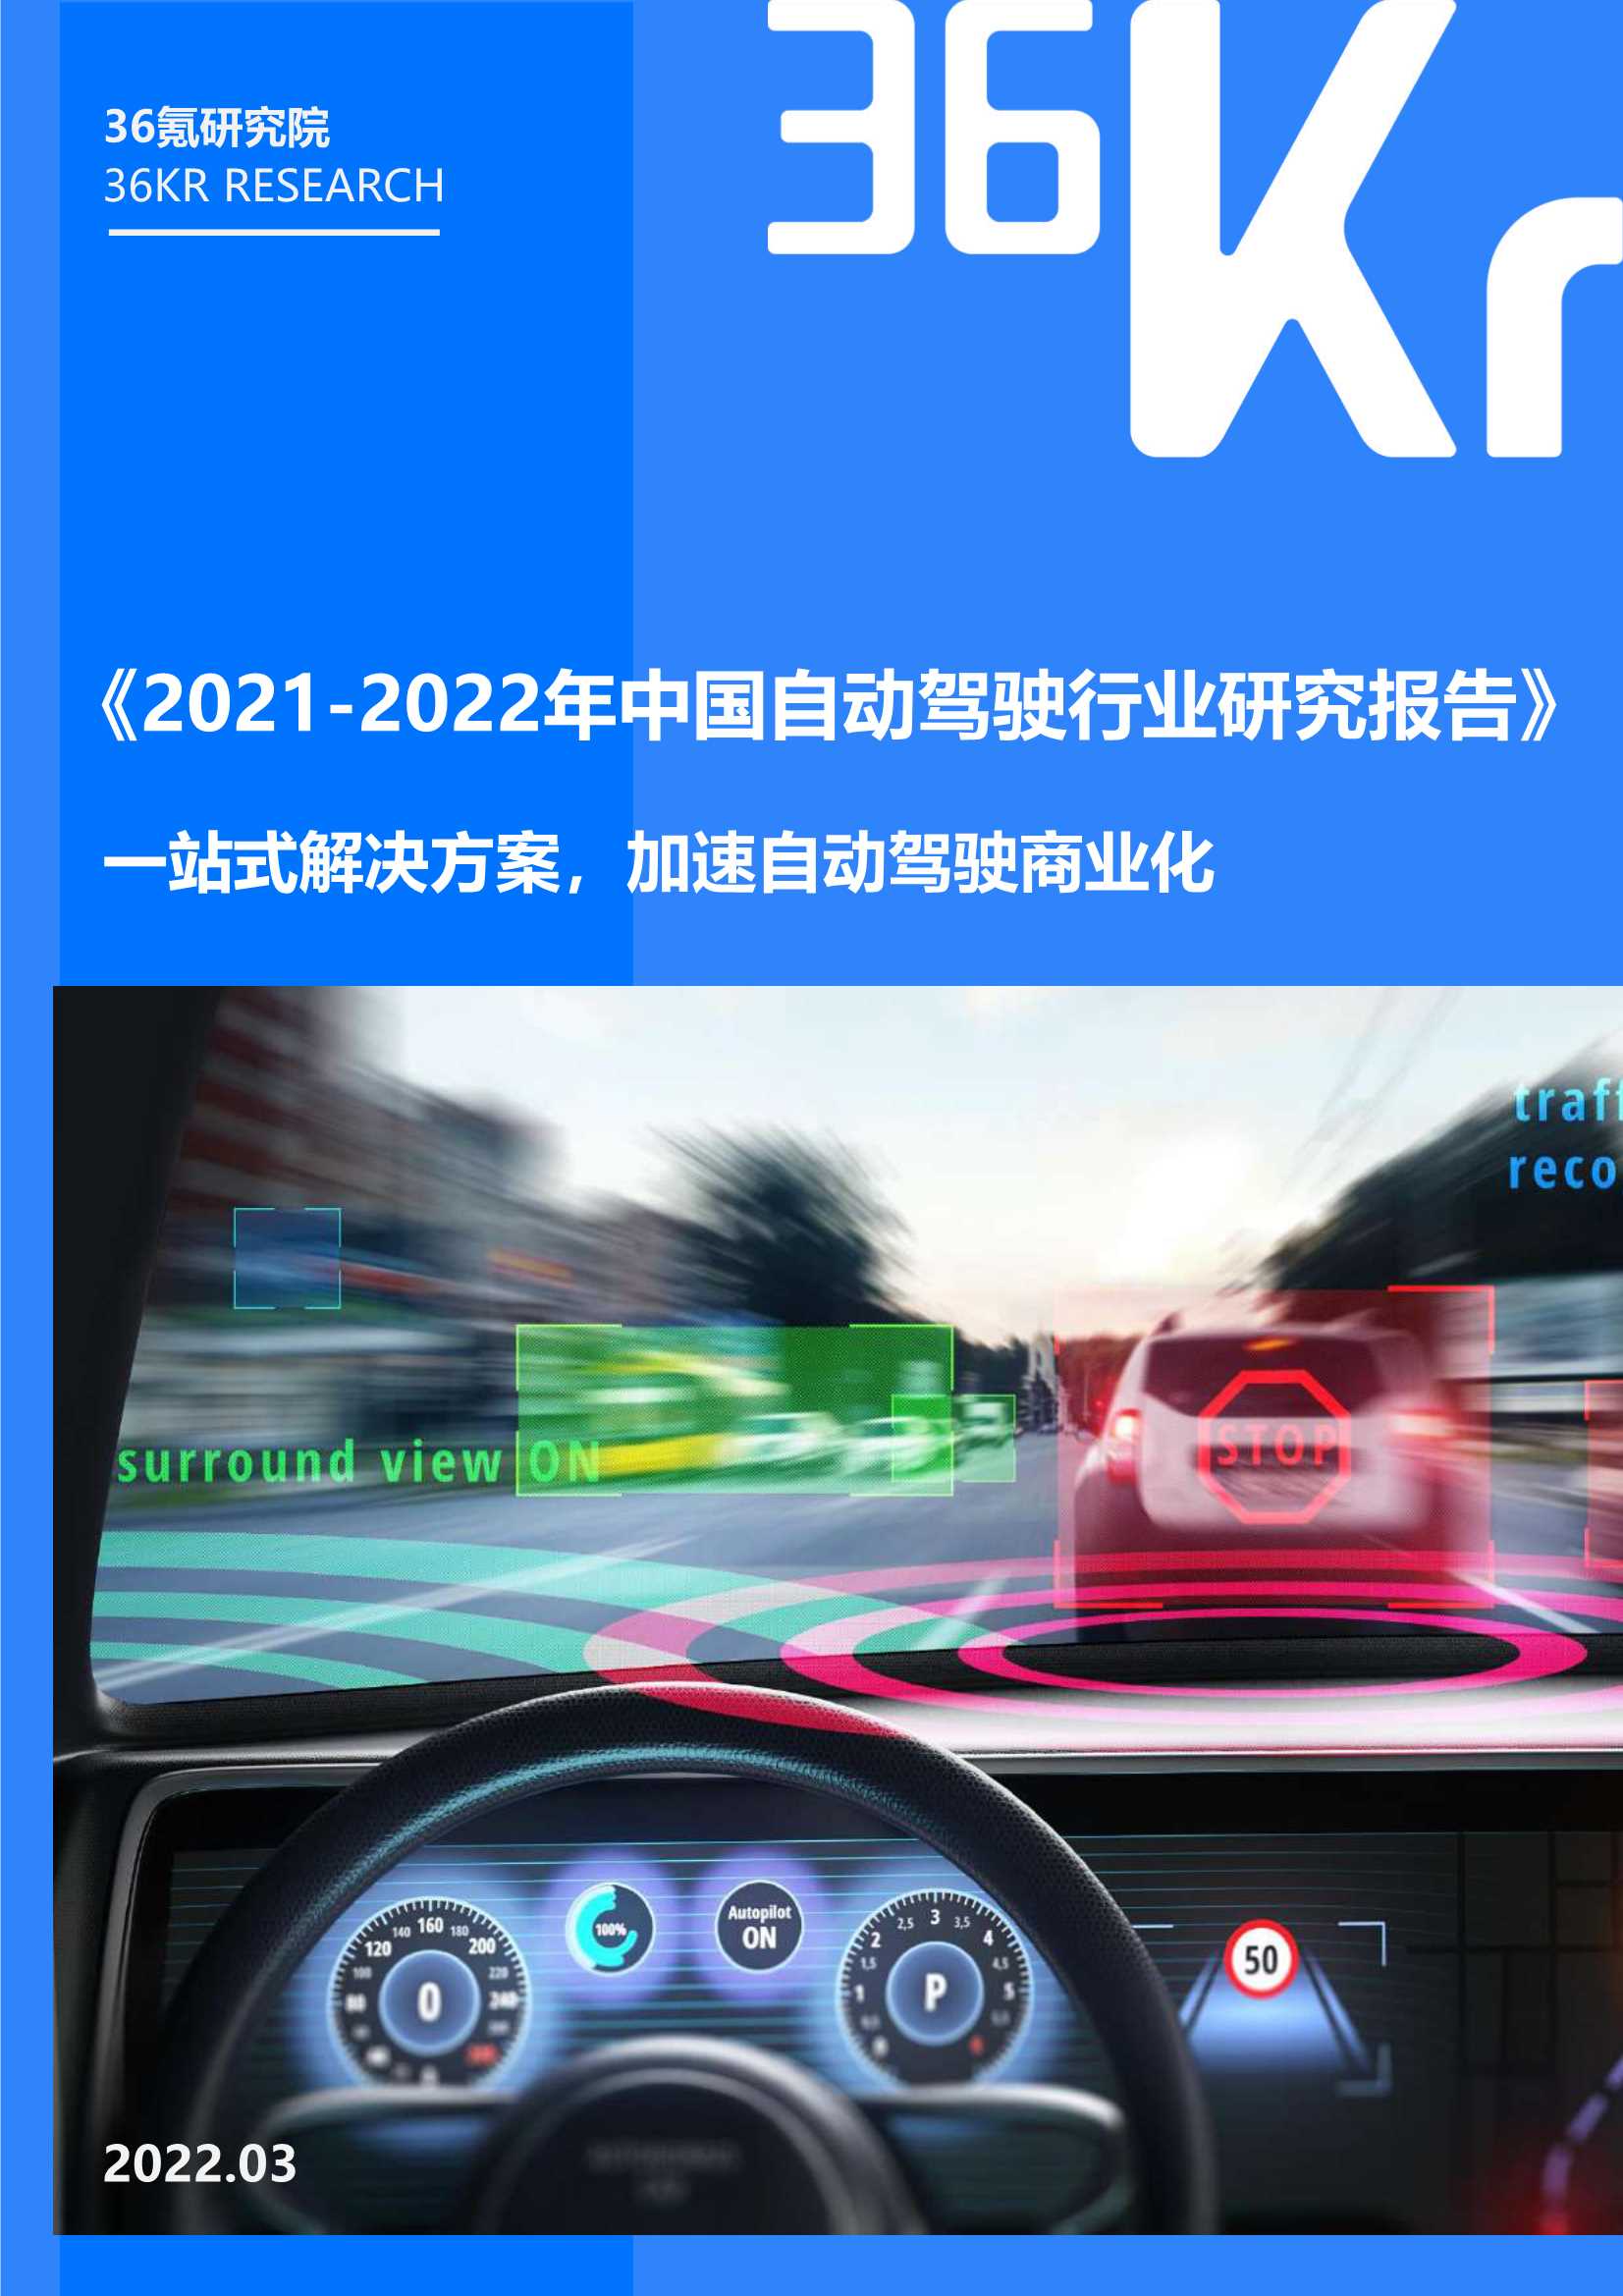 36Kr-2021-2022年中国自动驾驶行业研究报告-2022.03-38页